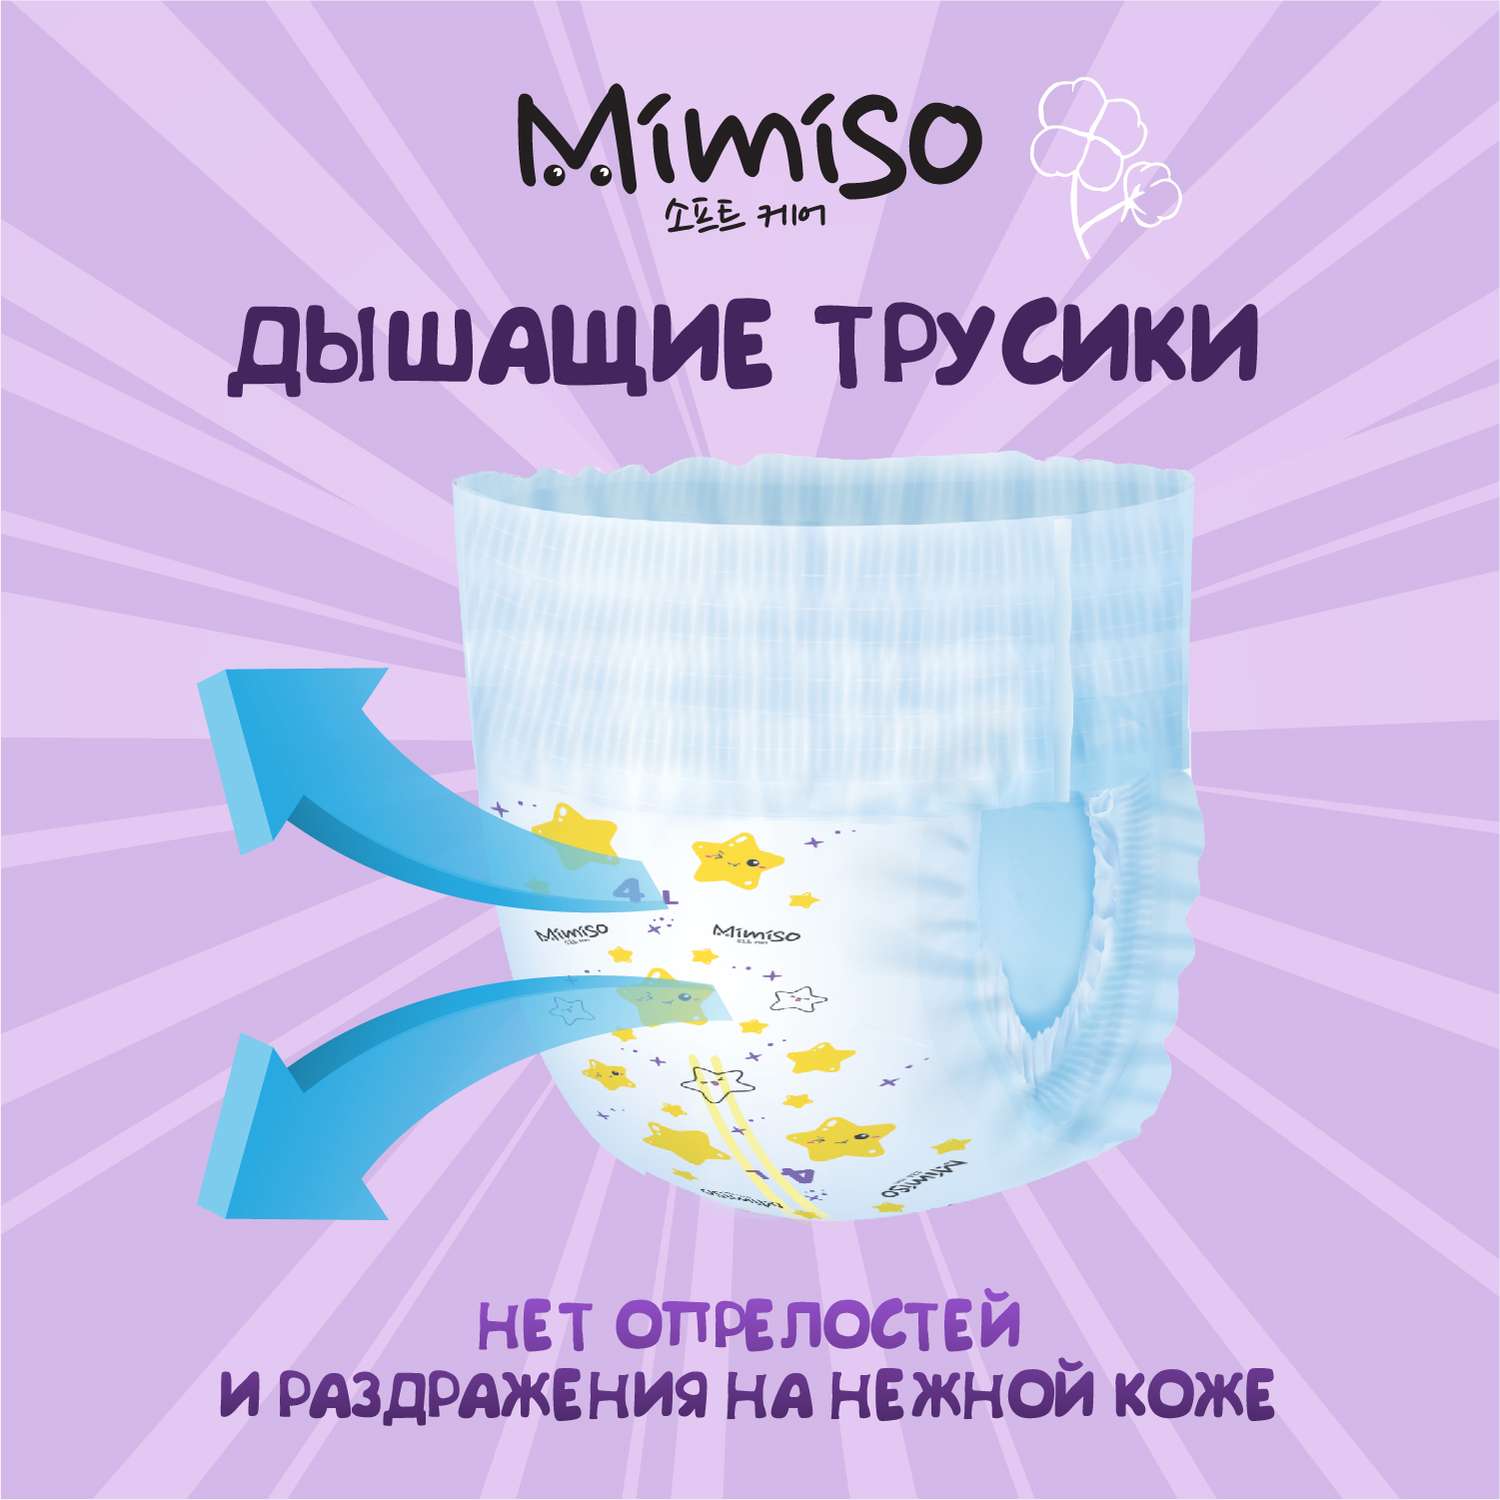 Трусики Mimiso одноразовые для детей 5/XL 13-20 кг 36шт - фото 5